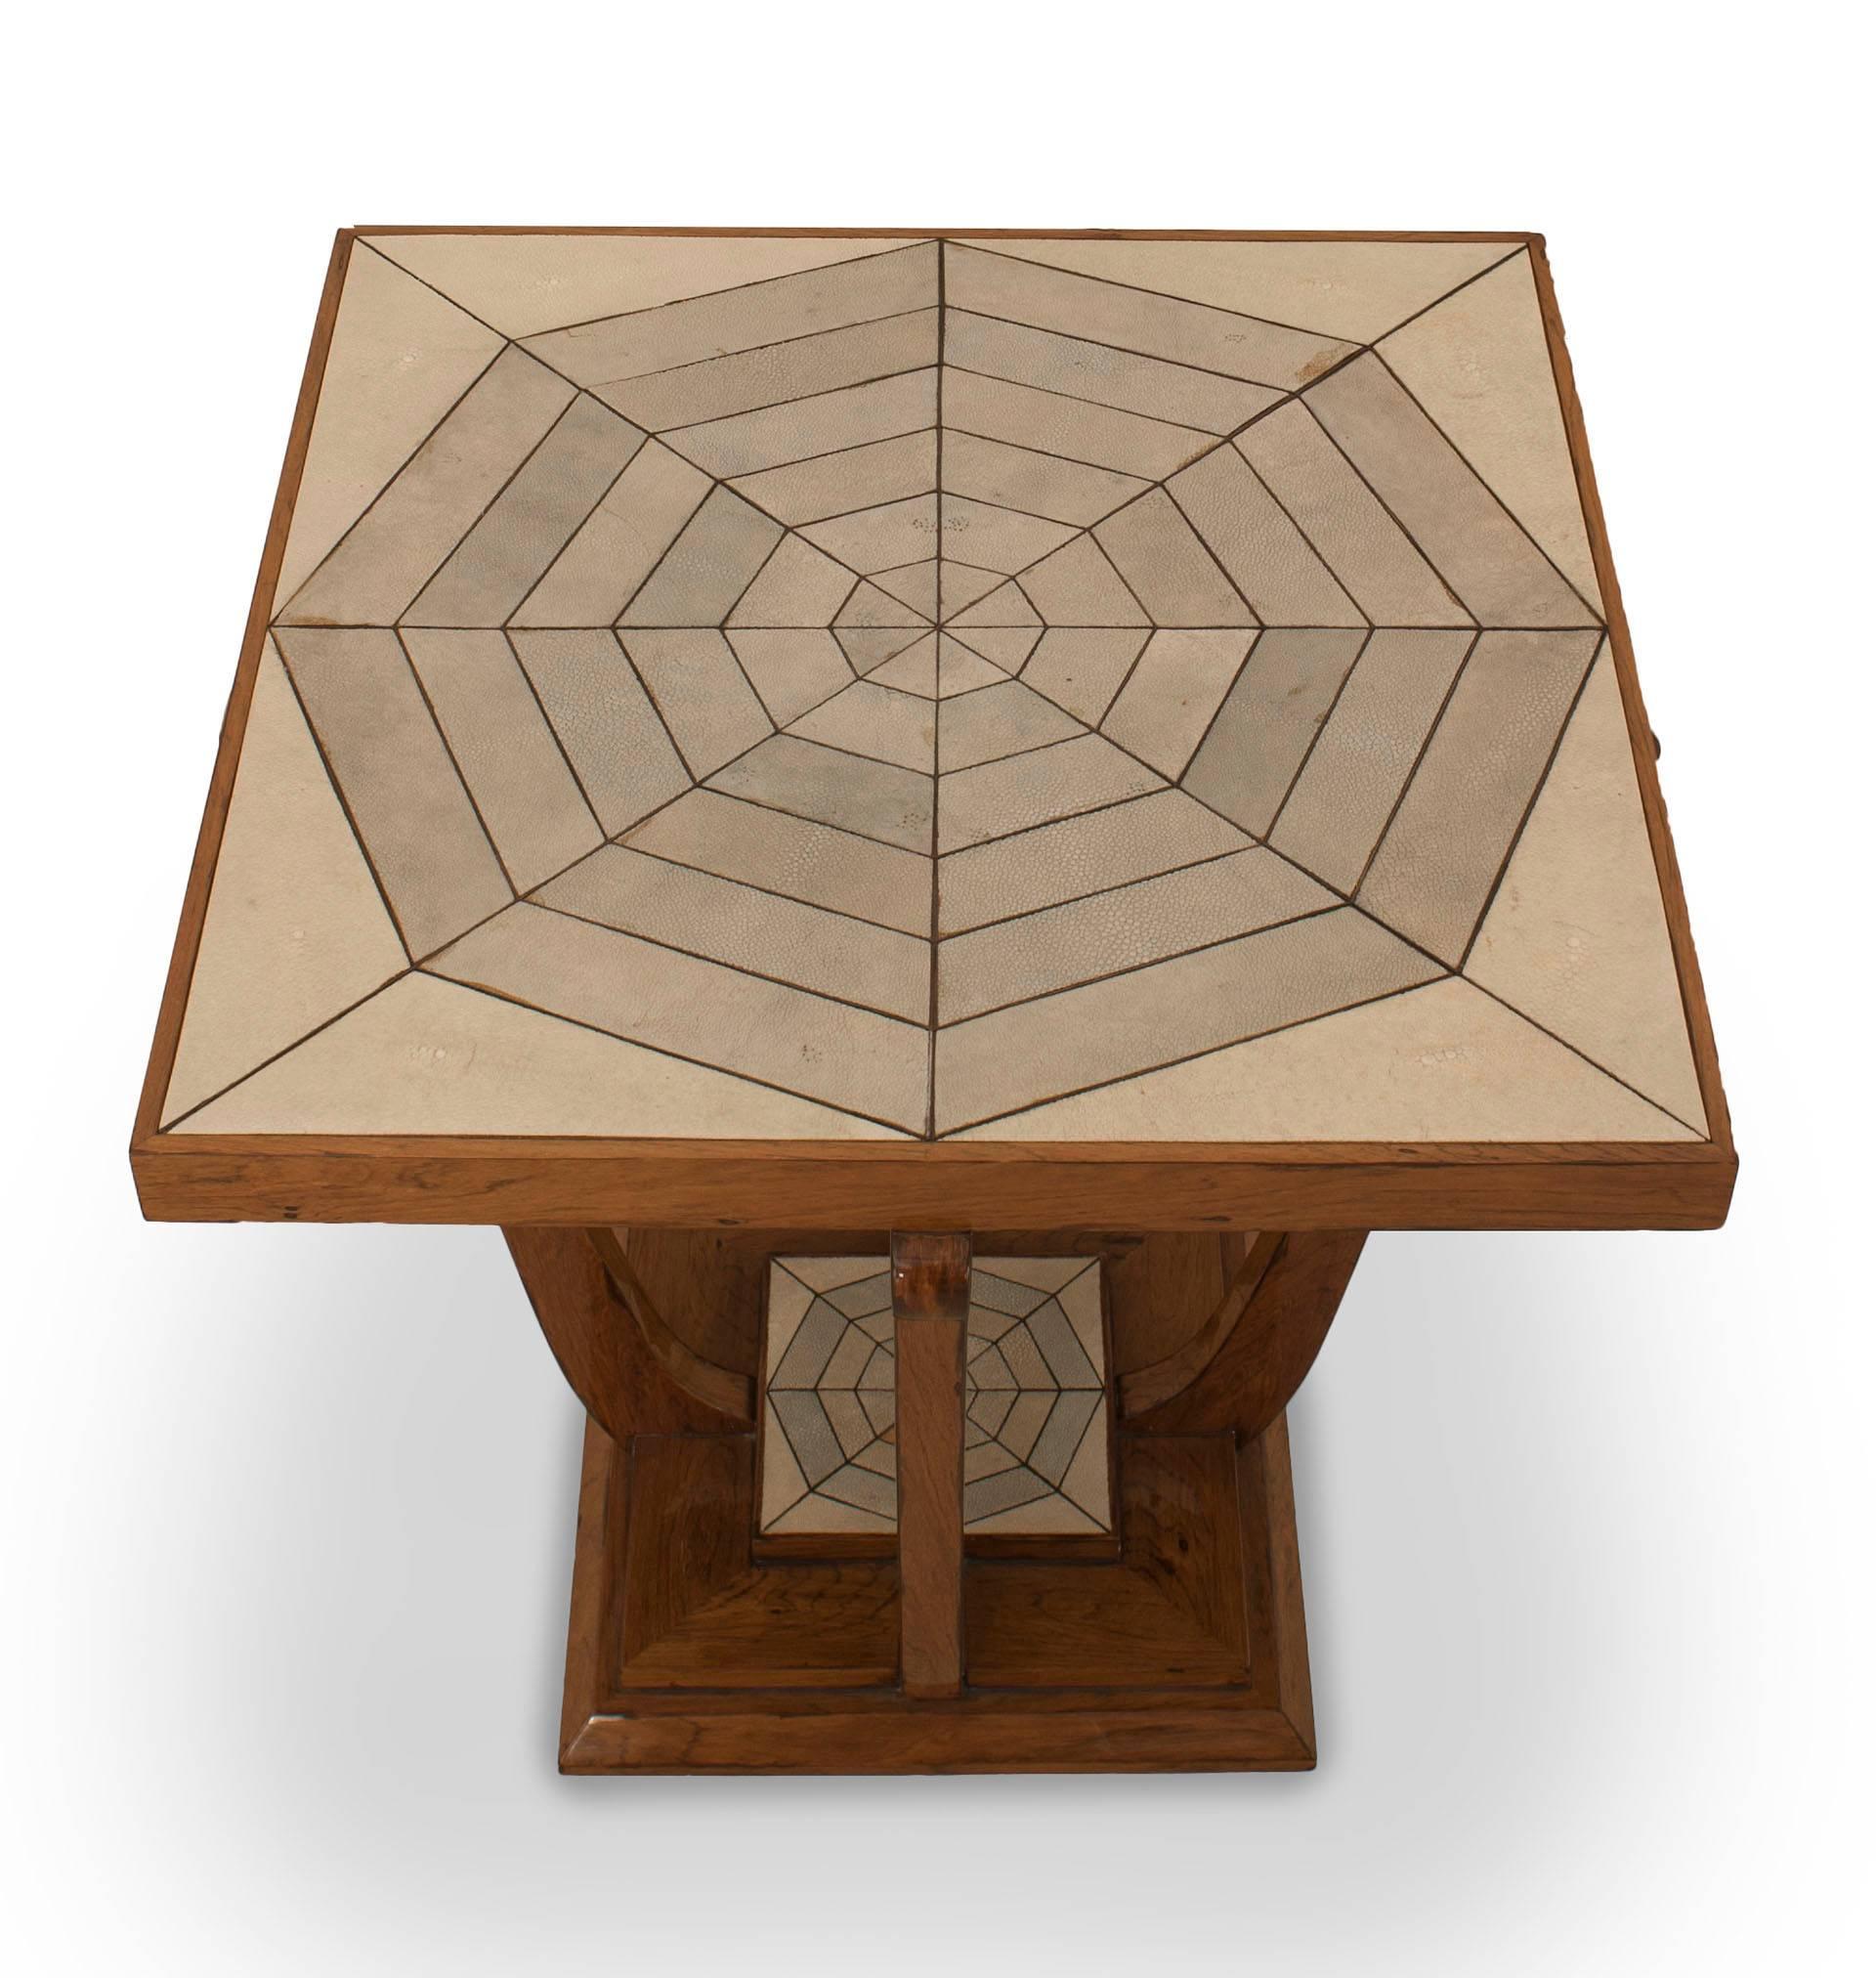 Table d'appoint carrée en merisier de style Art Déco français des années 1930, avec un plateau en galuchat beige et vert clair inséré et une étagère inférieure à motif octogonal.
  